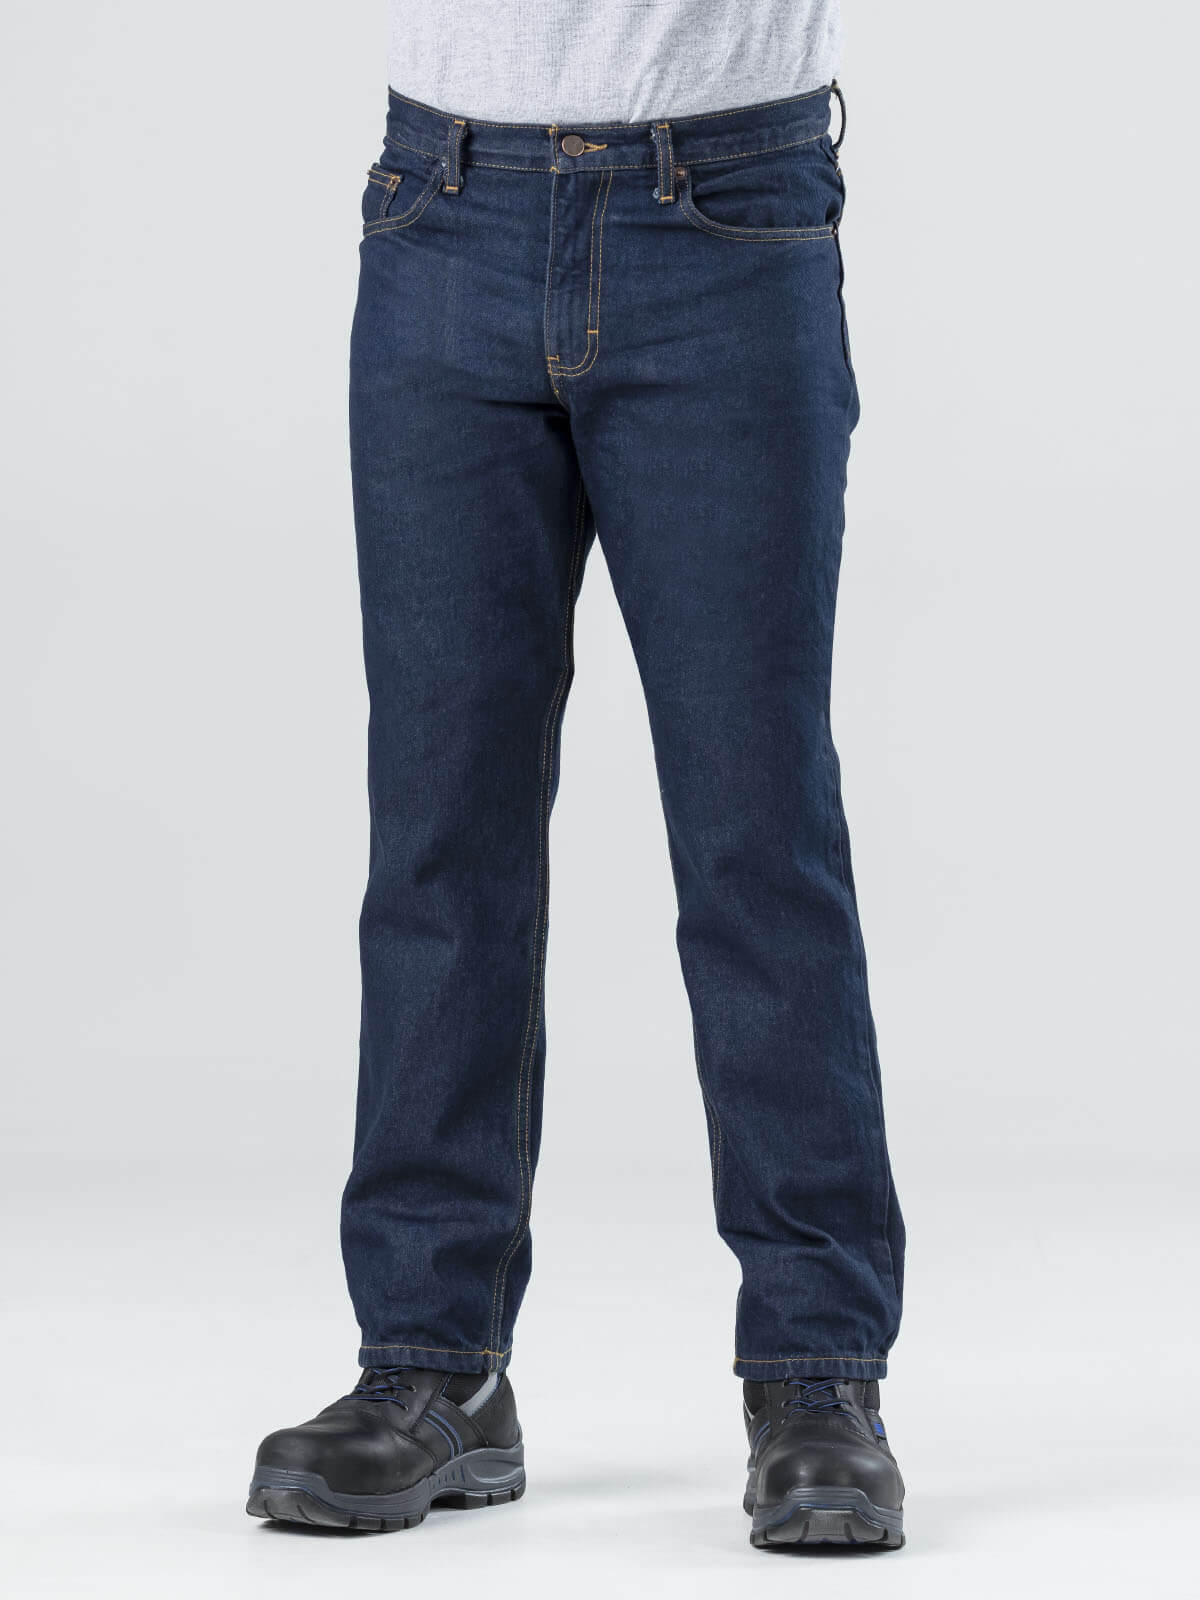 Denim Jeans With Logo Company